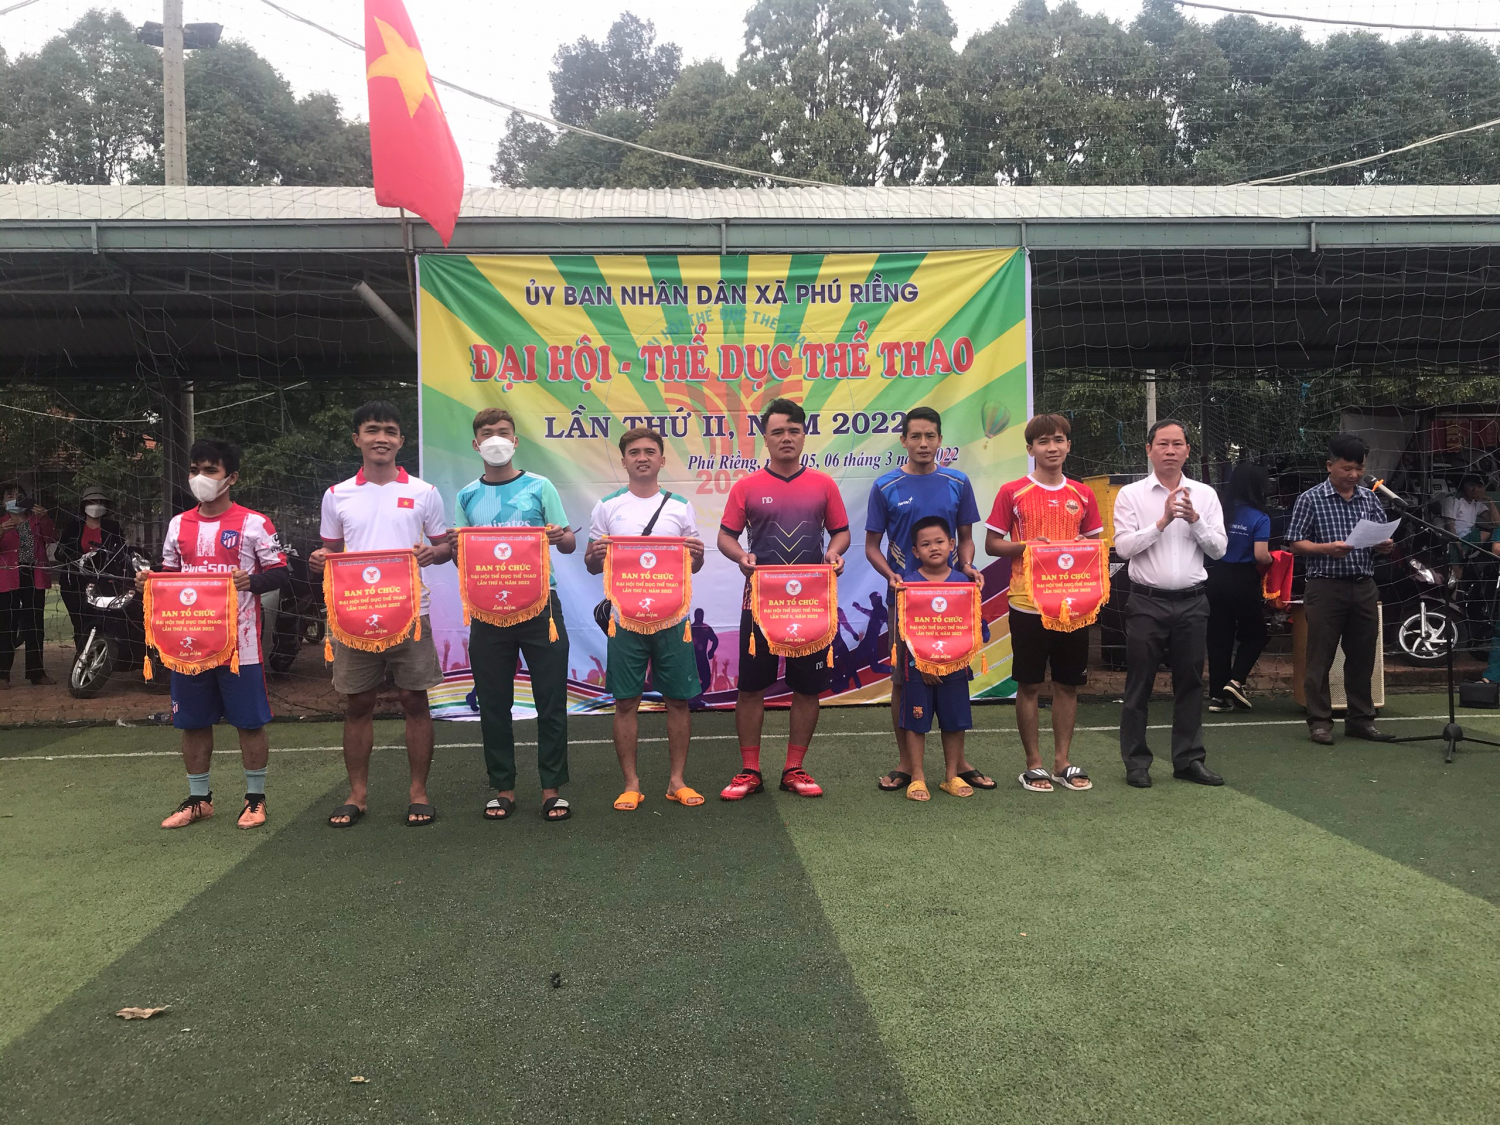 Xã Phú Riềng tổ chức giải bóng đá năm 2022.